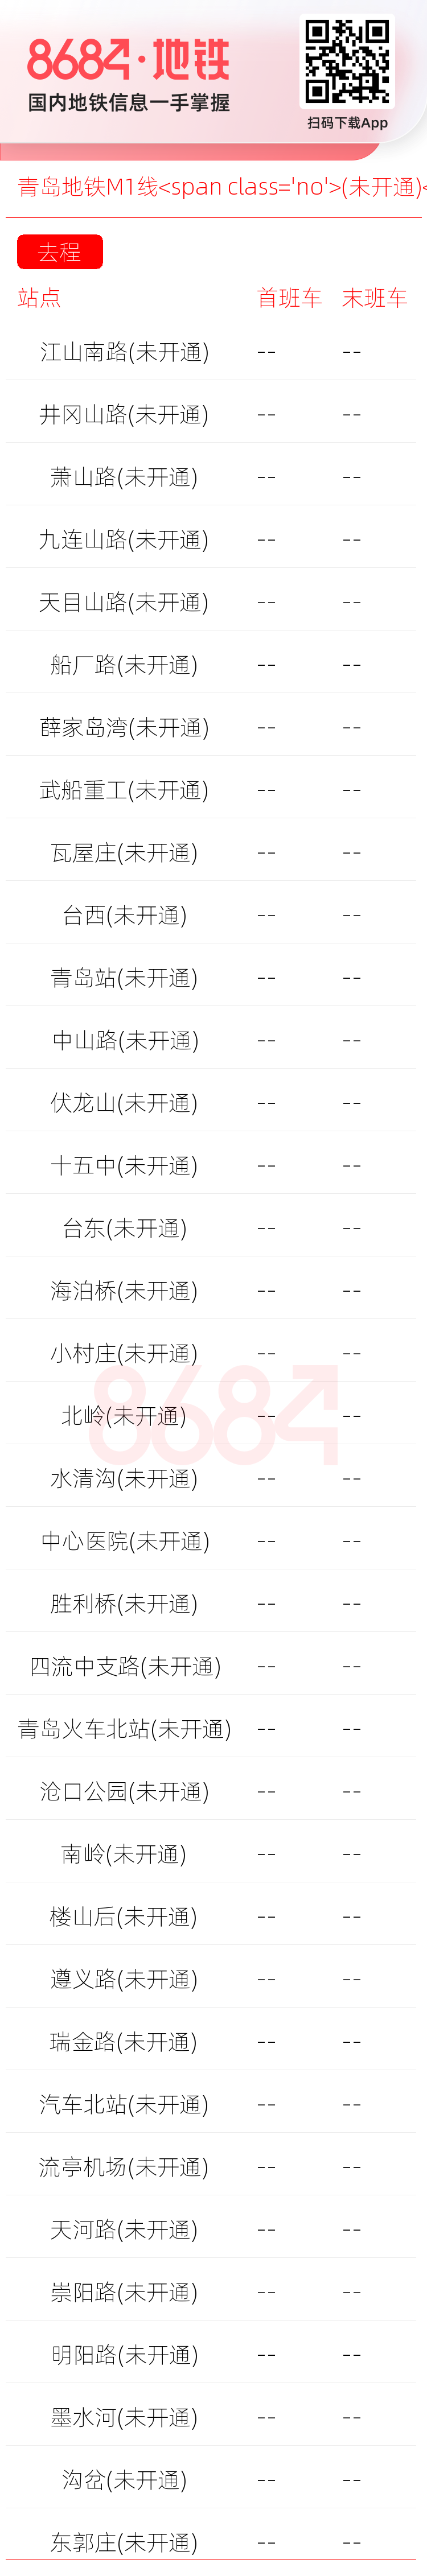 青岛地铁M1线<span class='no'>(未开通)</span>运营时间表